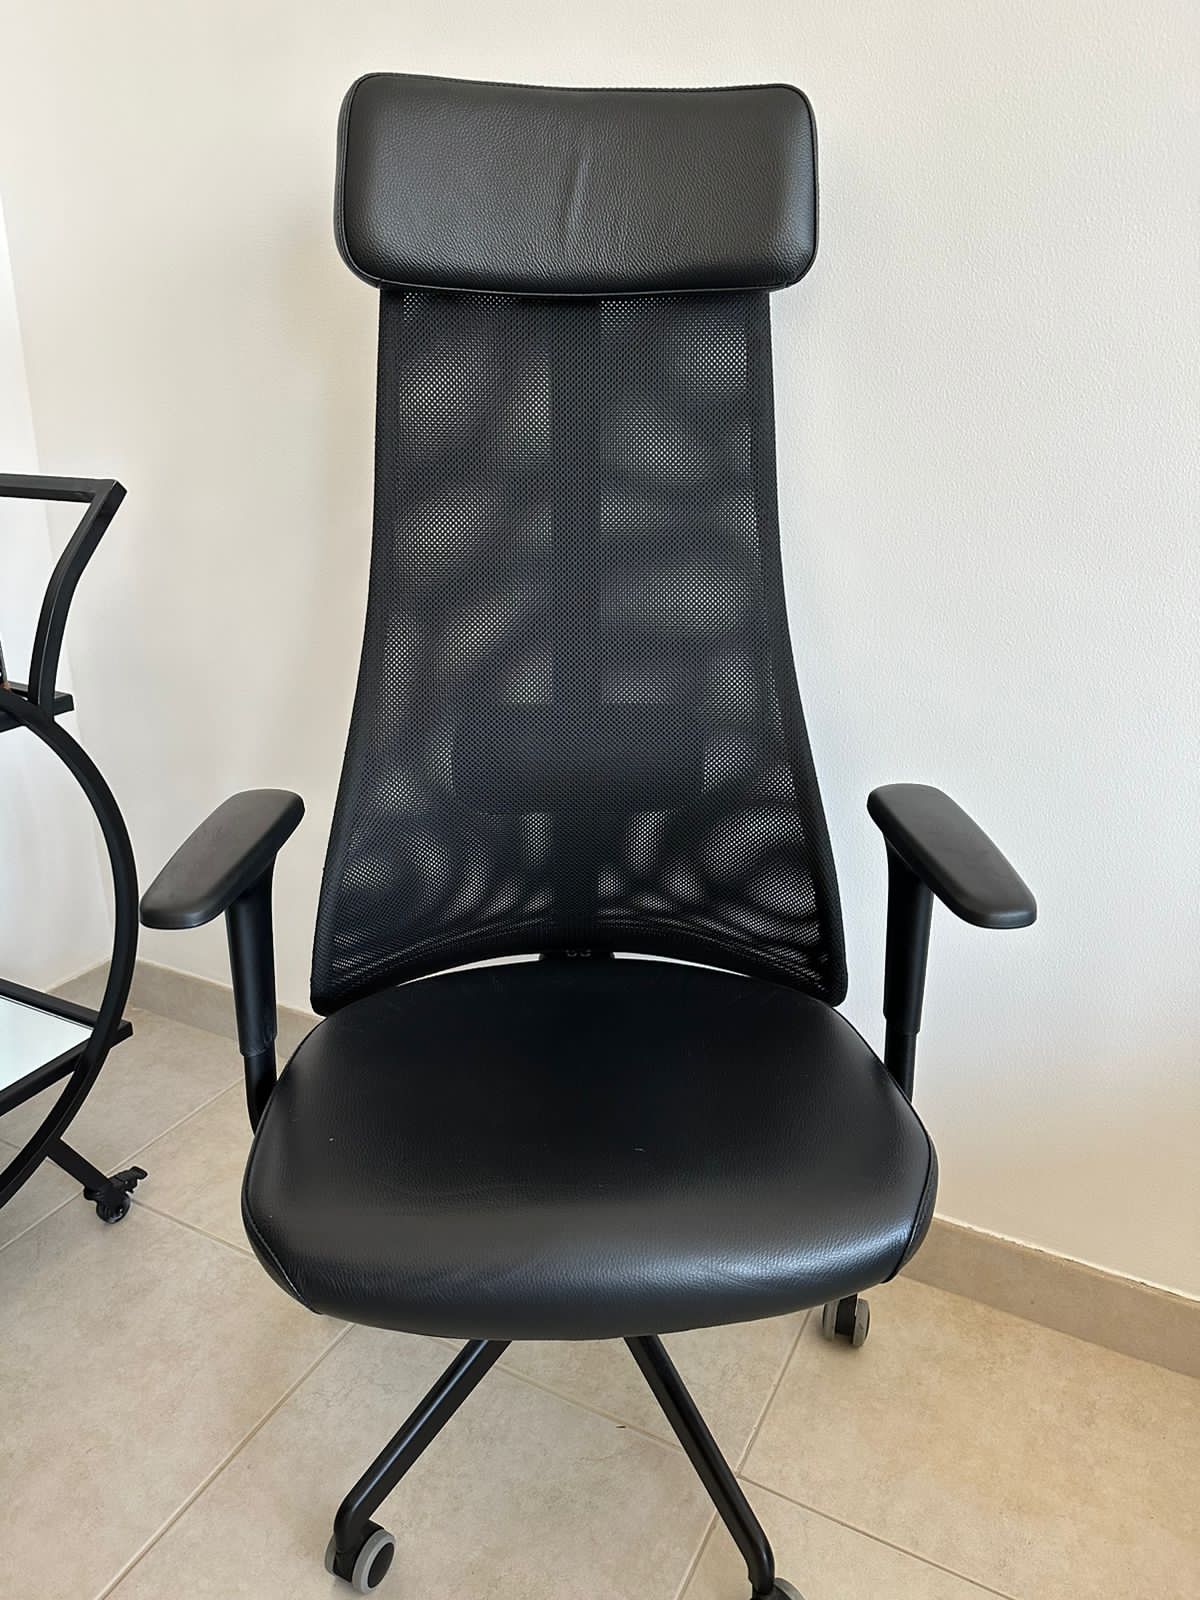 IKEA JÄRVFJÄLLET office chair